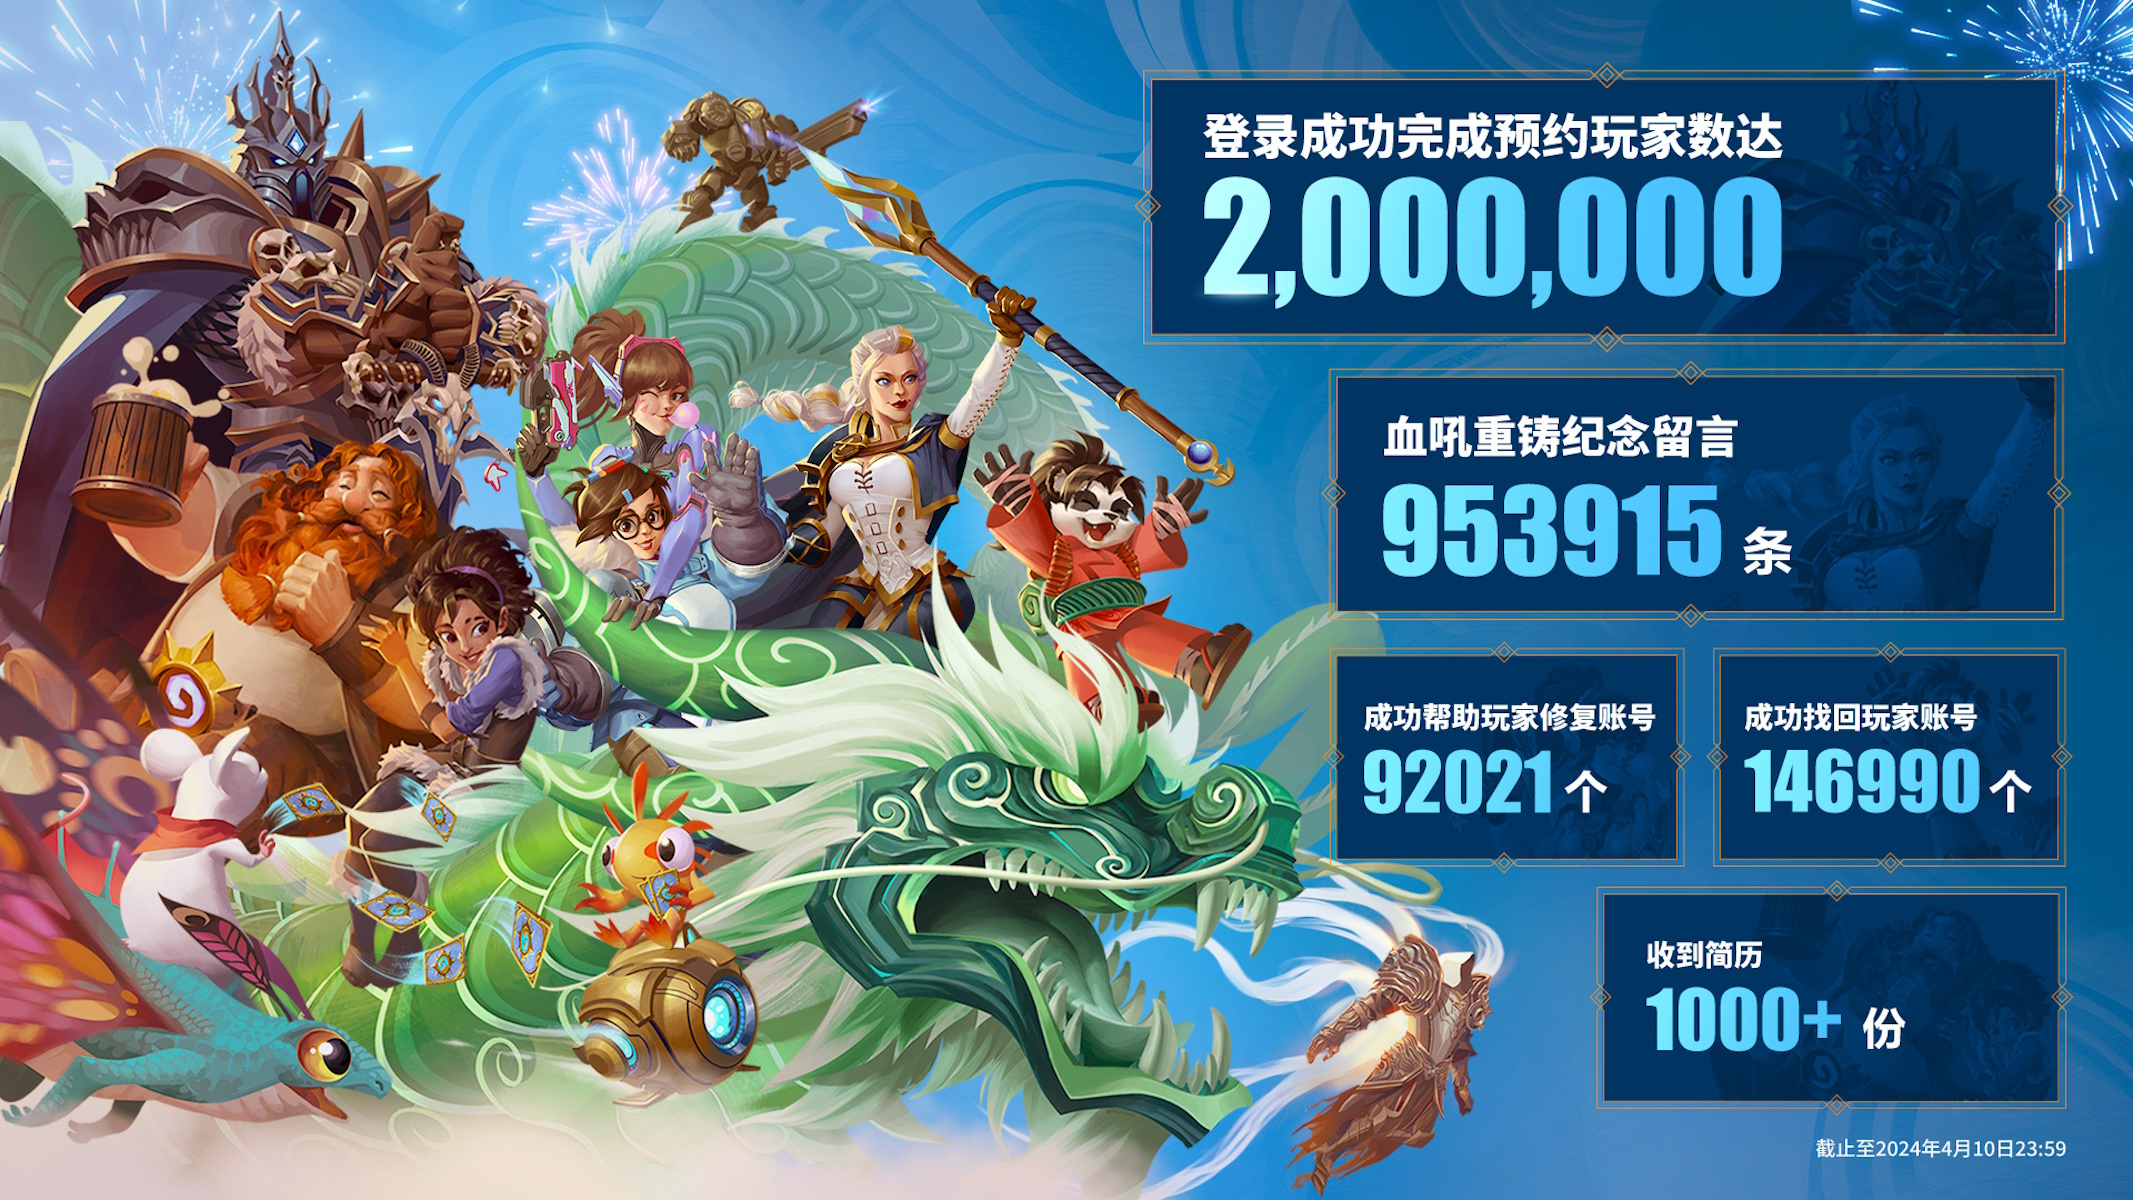 Blizzard risultati in Cina per la riapertura